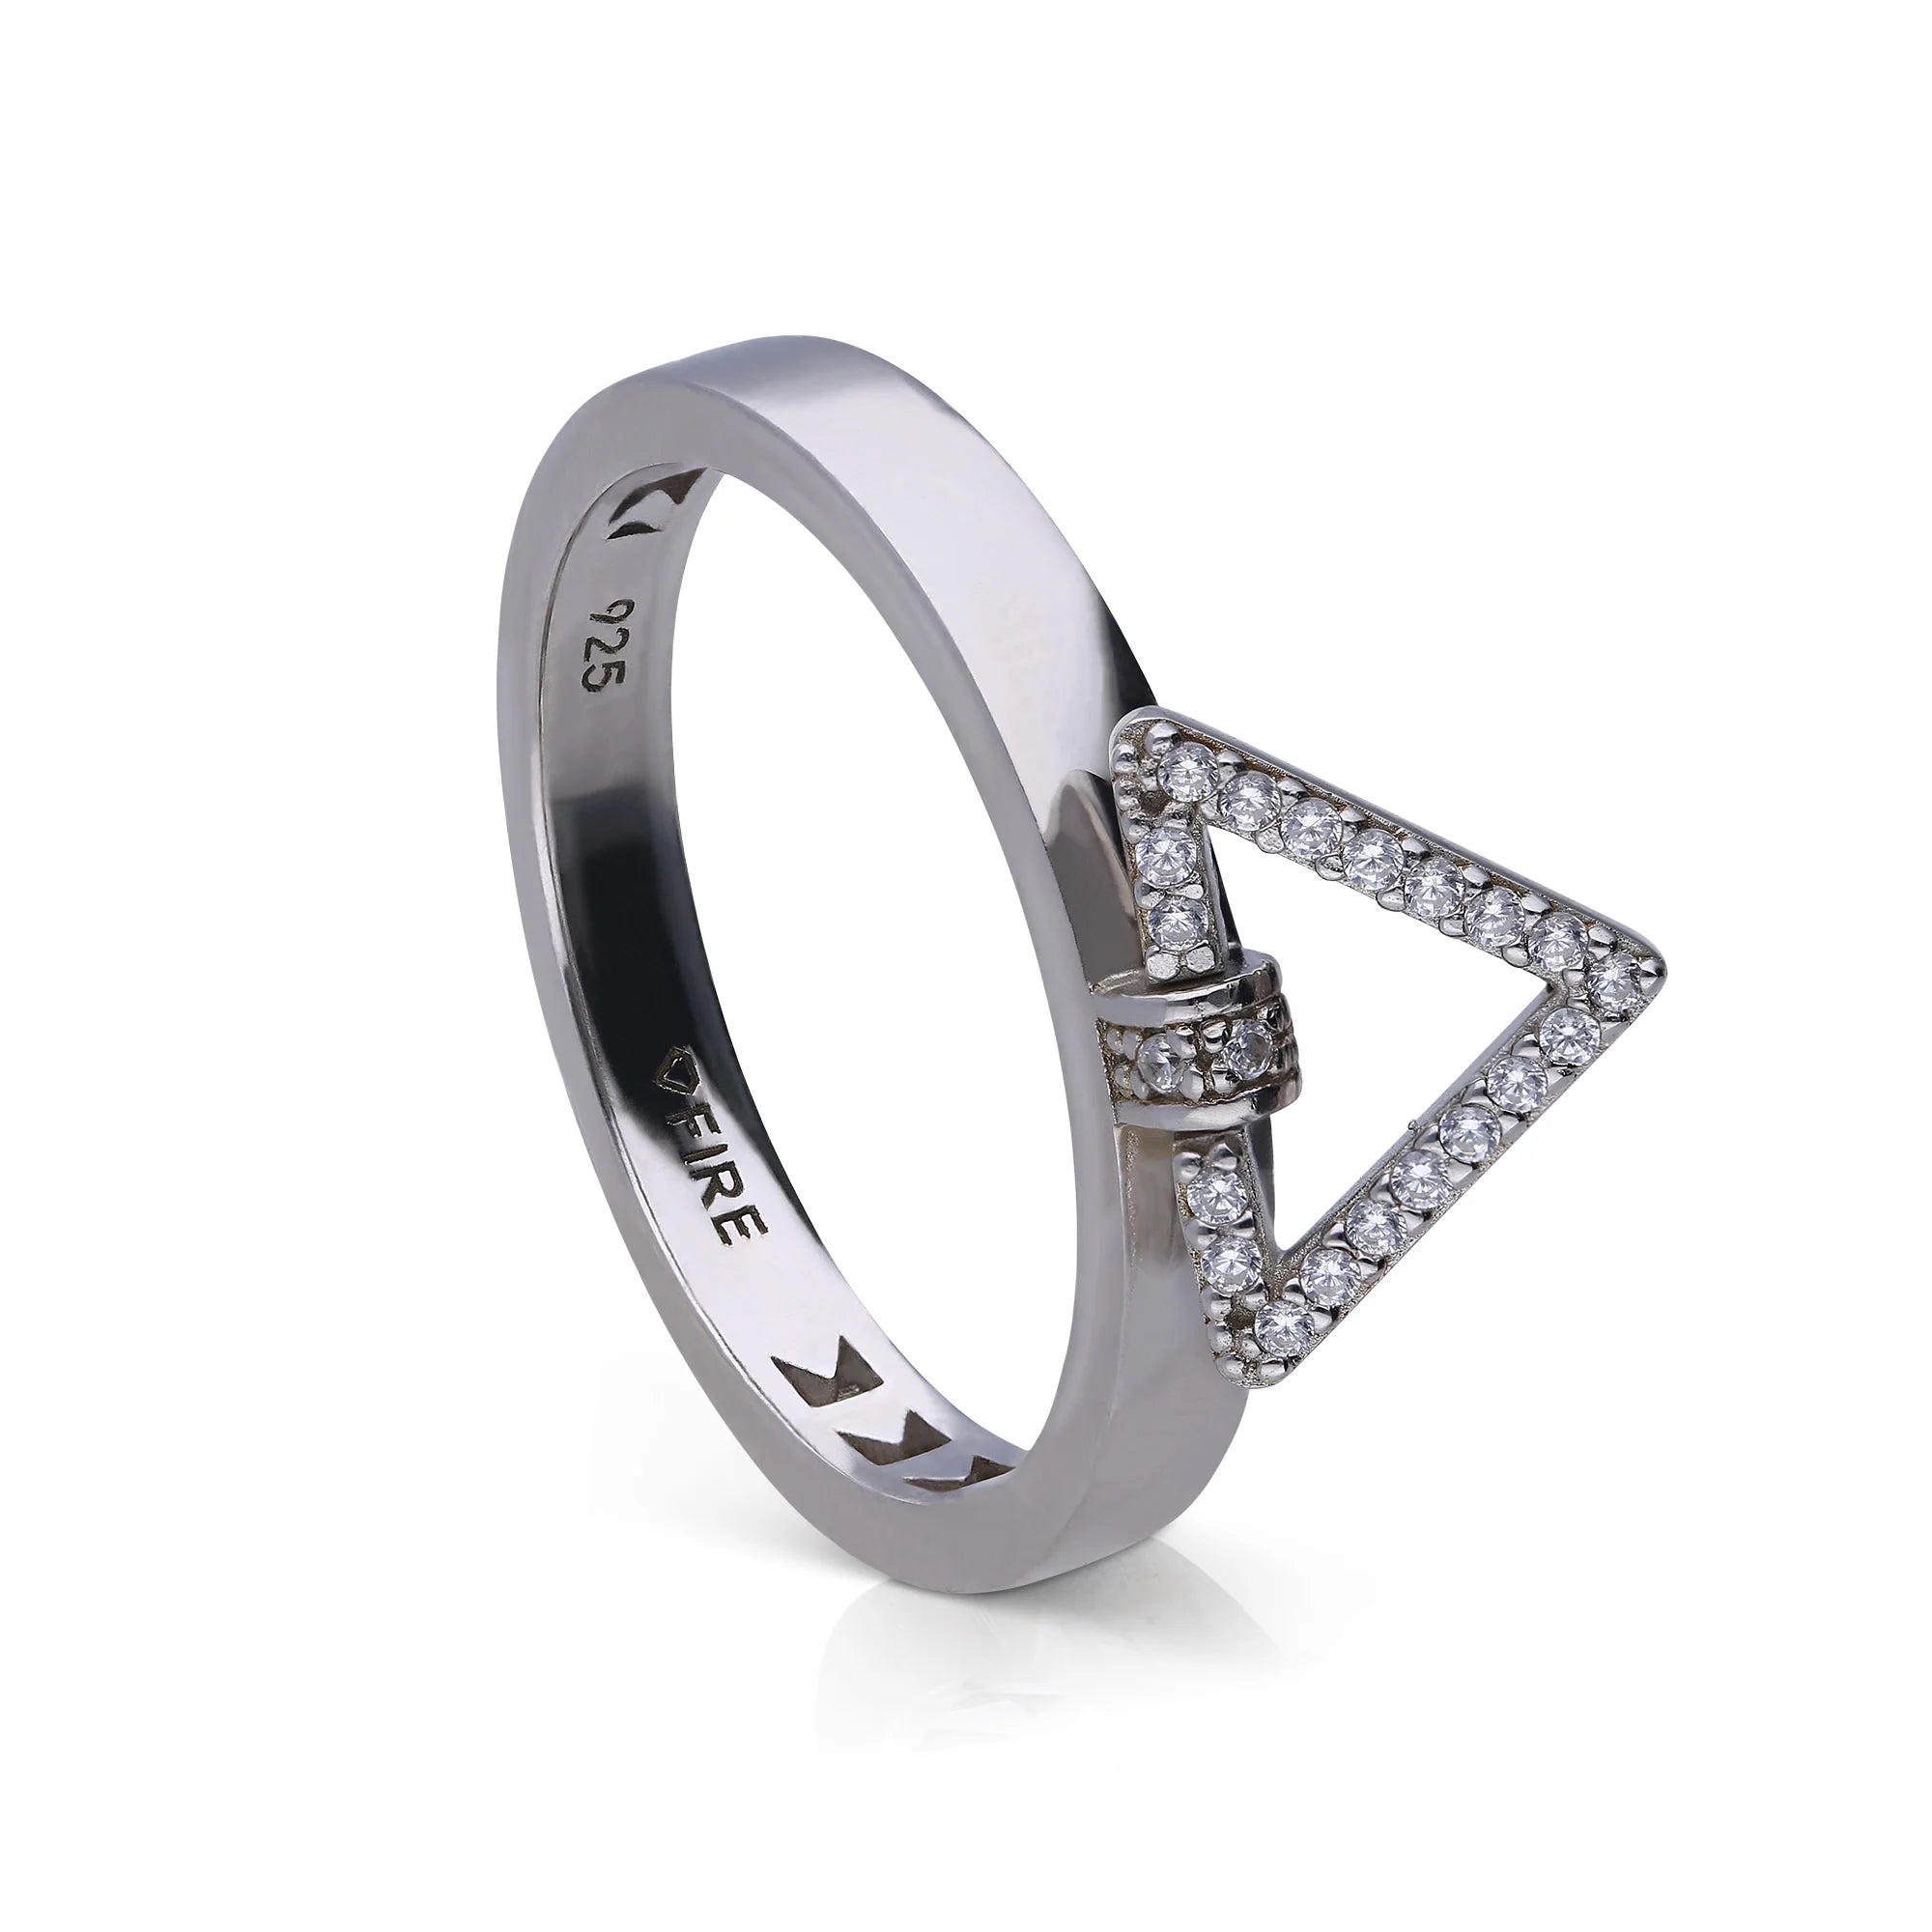 Silberner Diamonfire-Ring mit einer einfachen Ringschiene, welcher durch ein befestigtes, mit Zirkonia-Steinen besetztes, kleines Dreieck verziert wurde